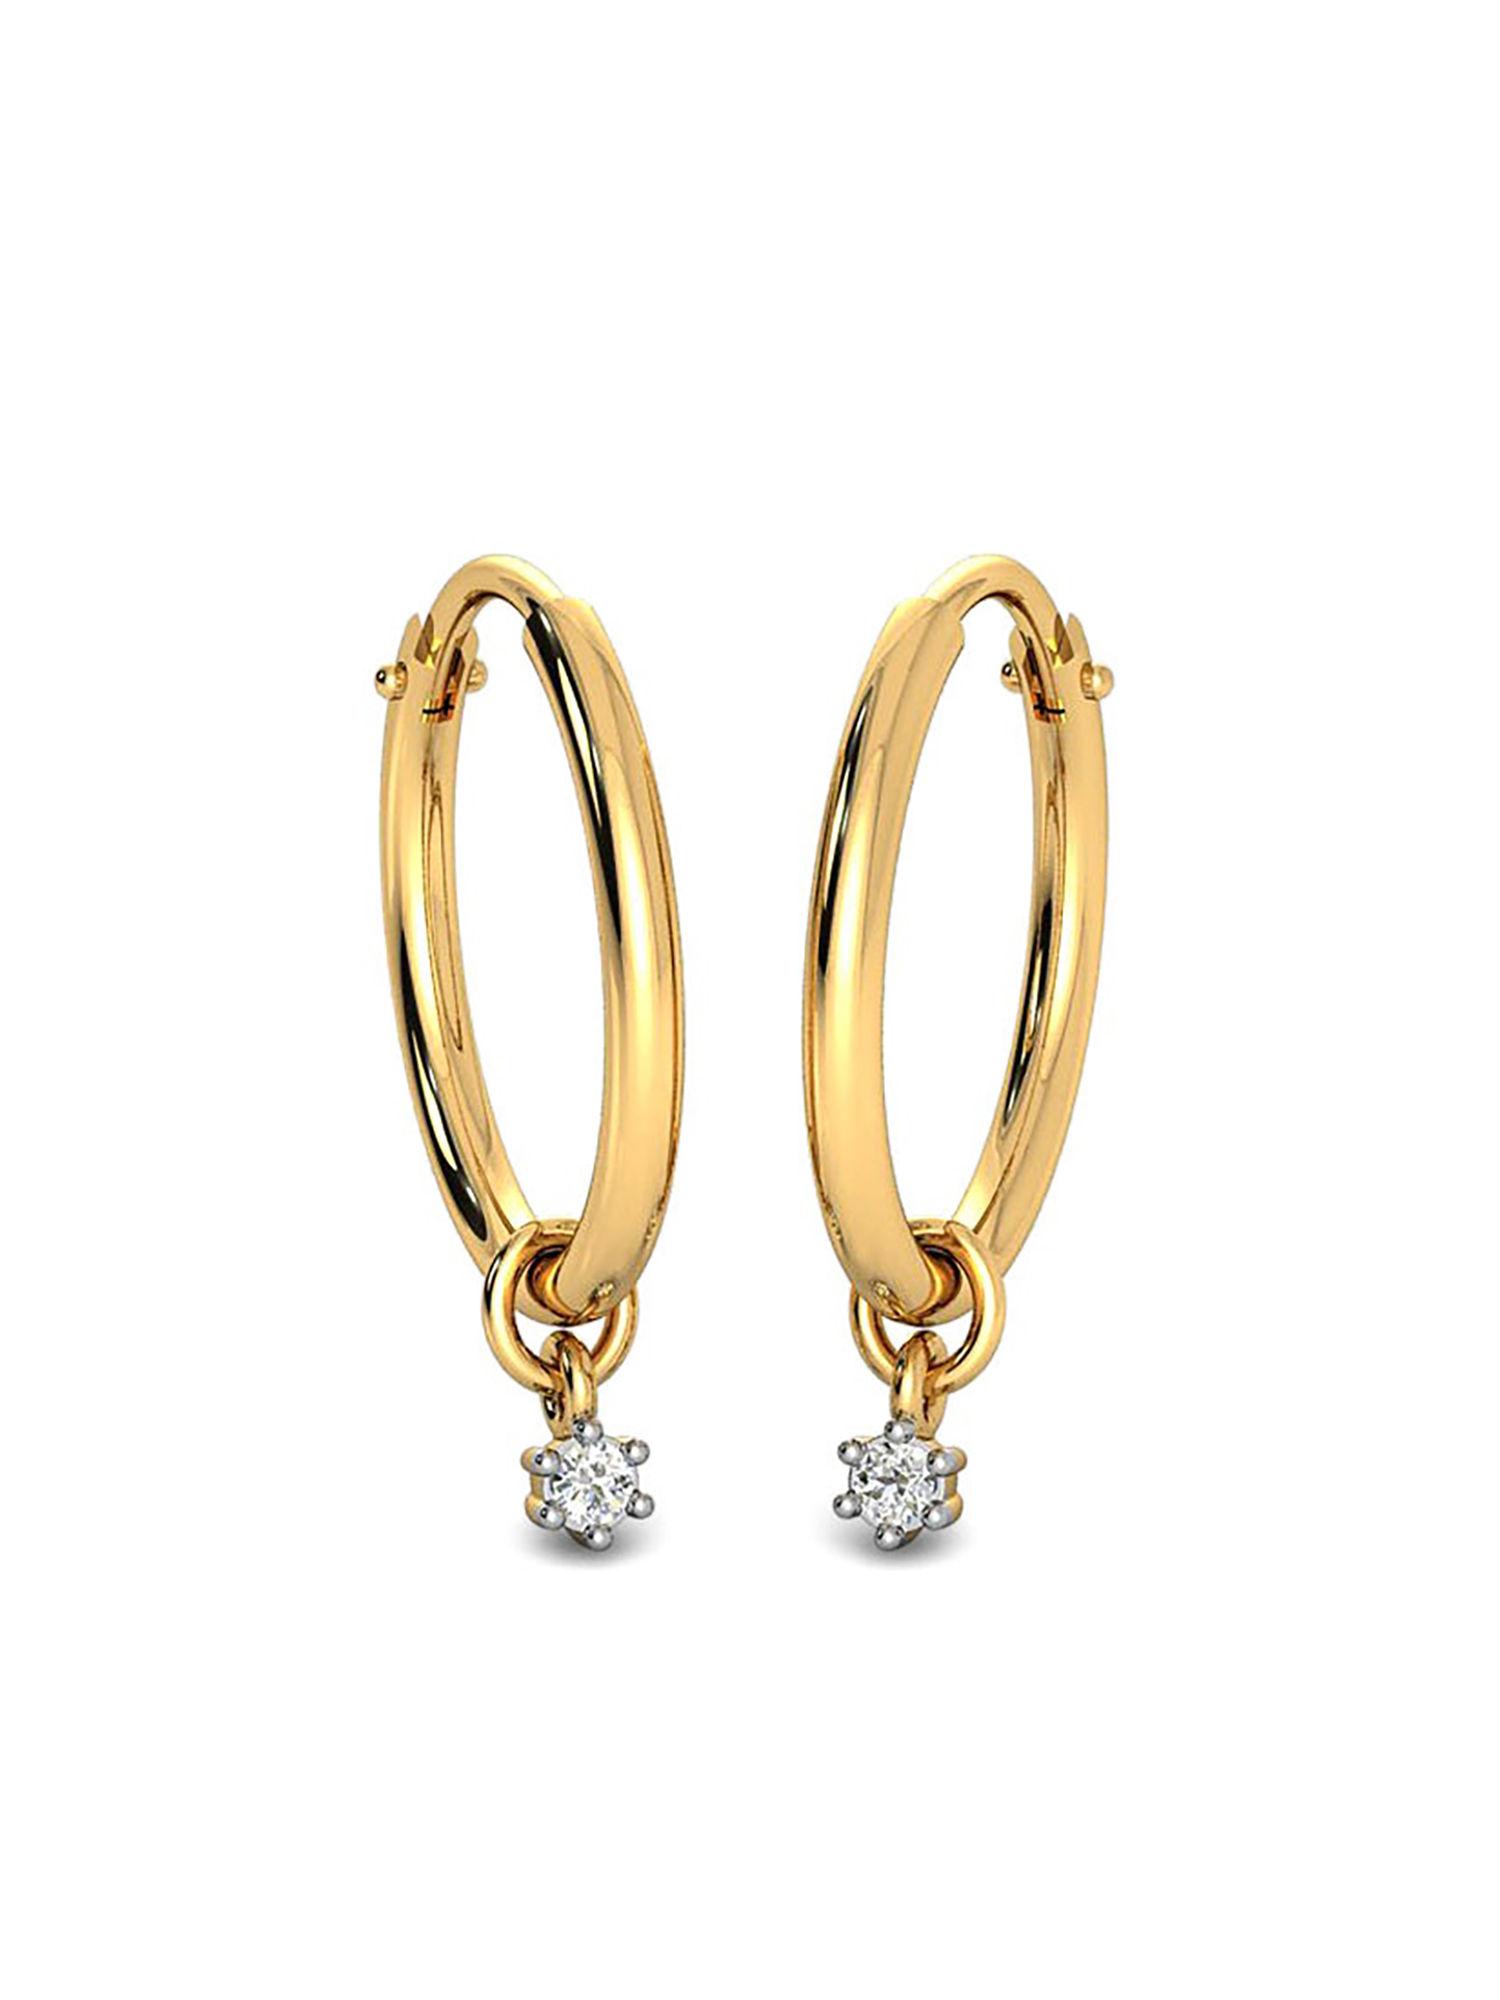 18k (750) bis hallmark yellow gold hoop earring